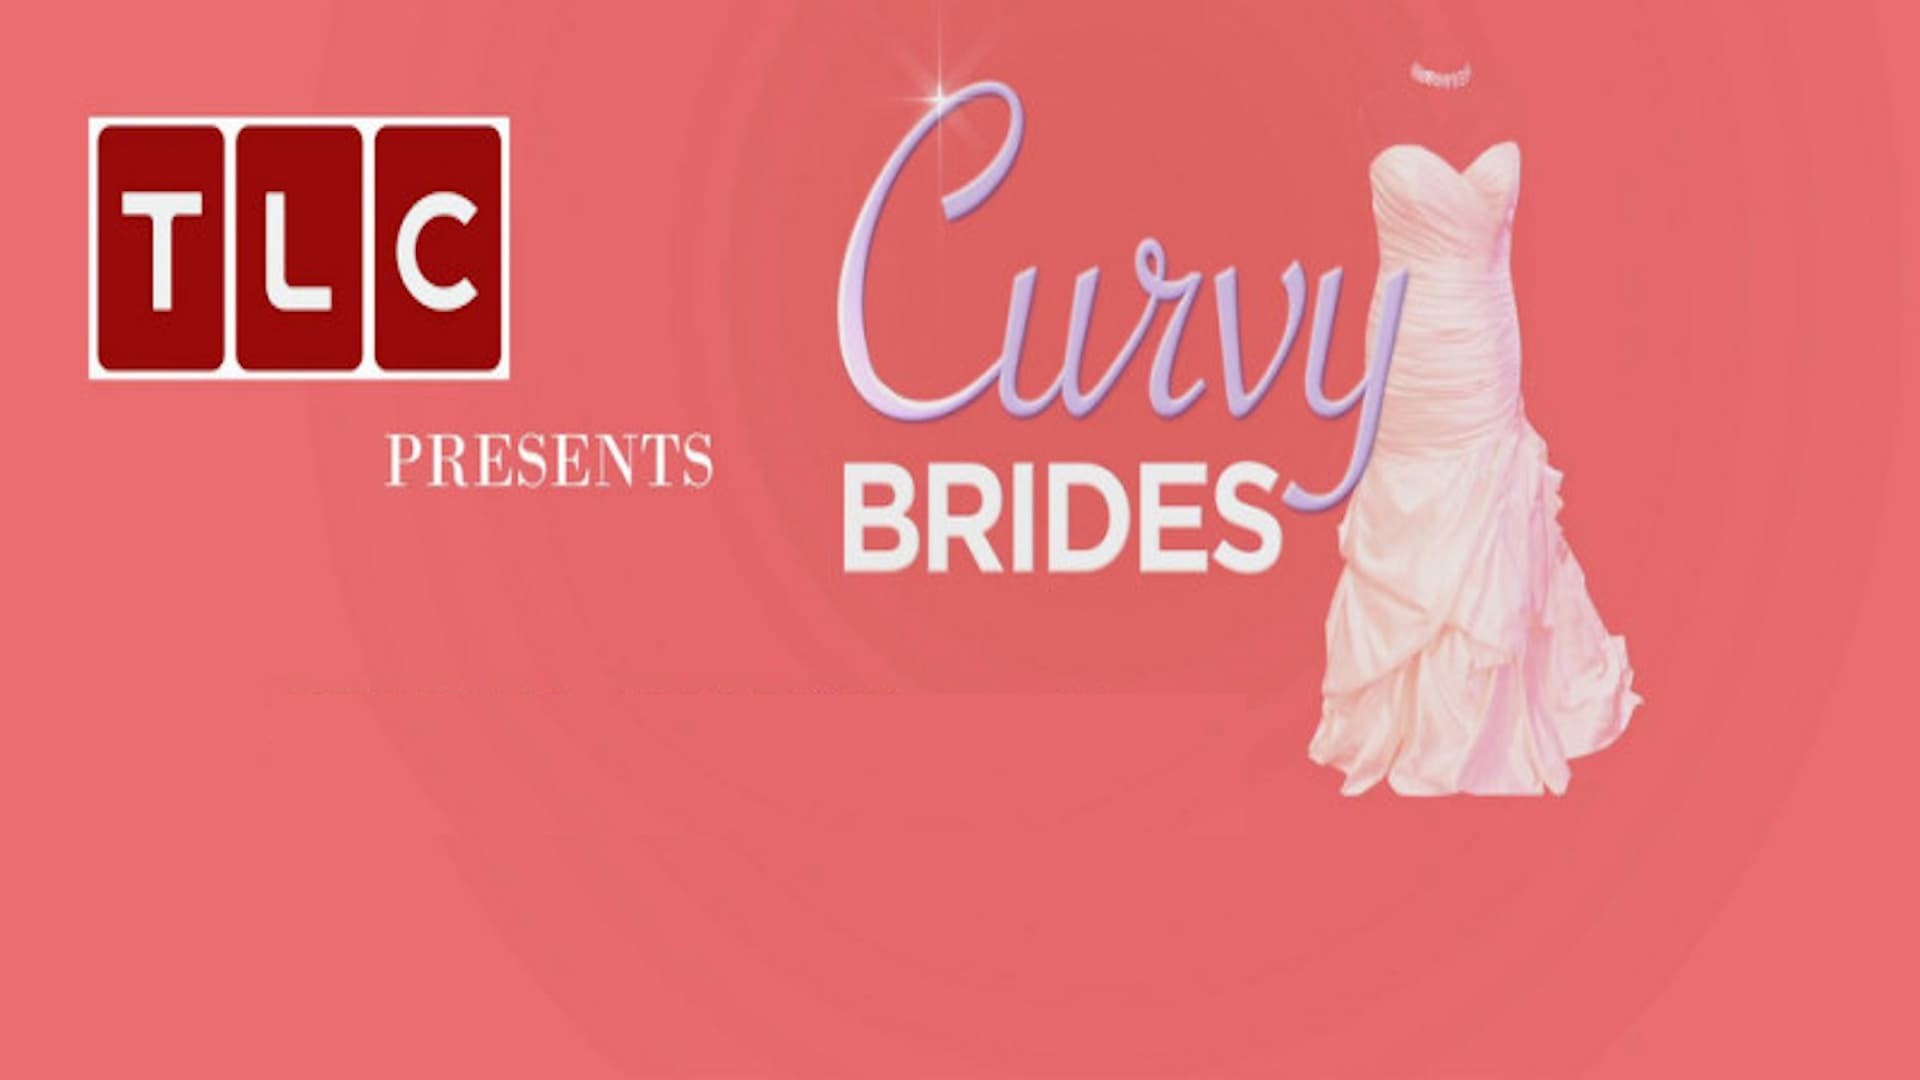 Curvy Brides background